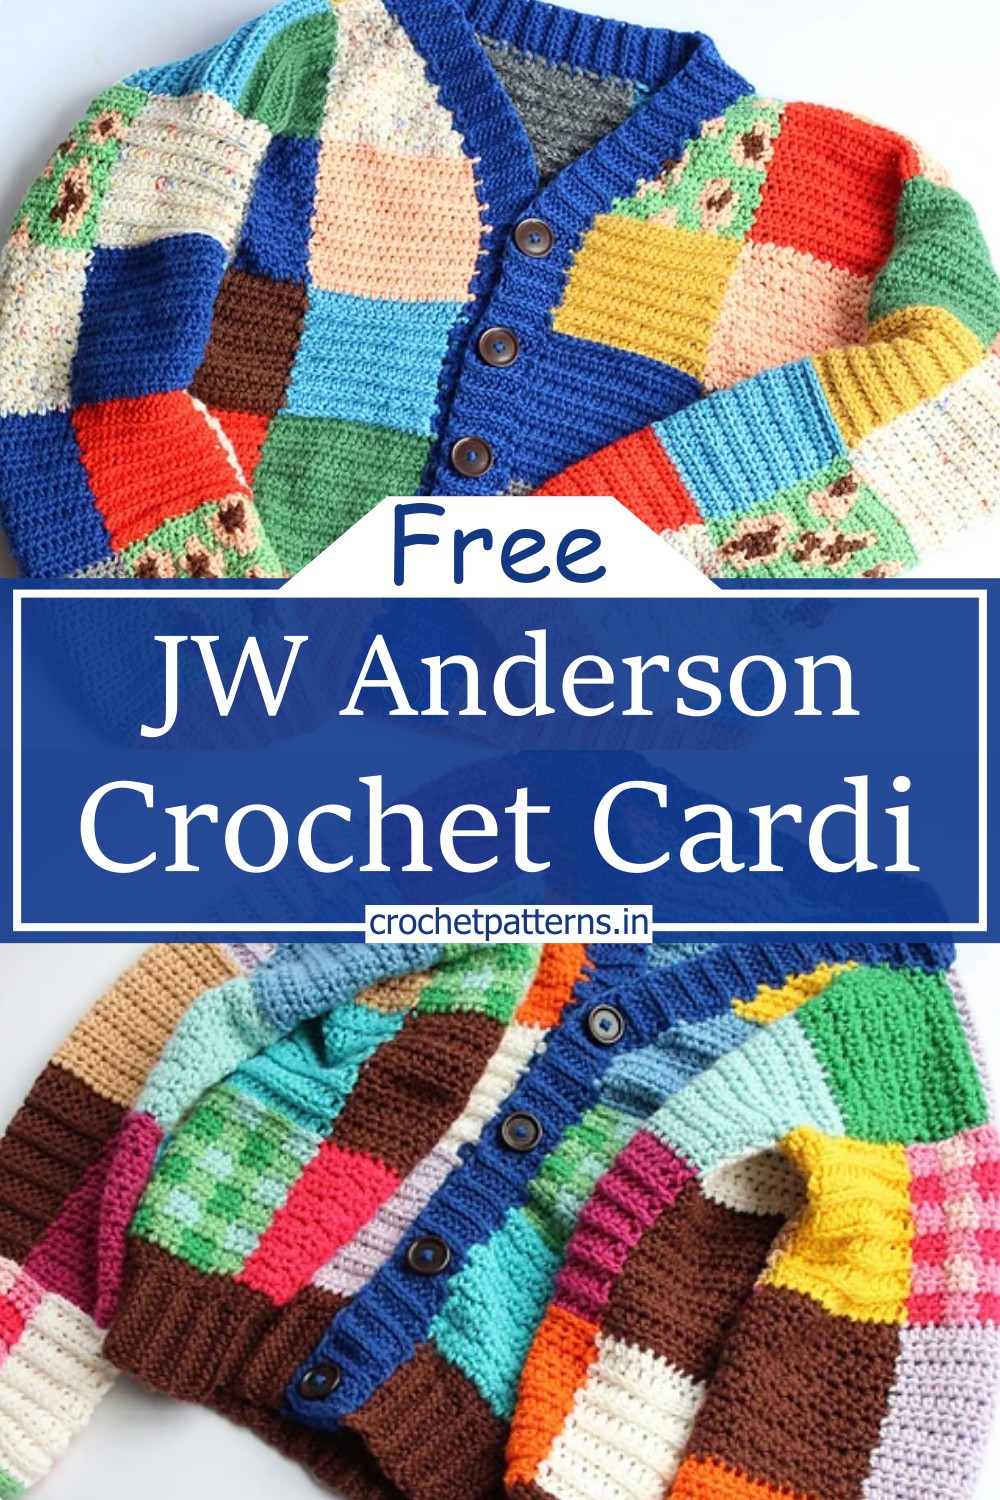 JW Anderson Crochet Cardi